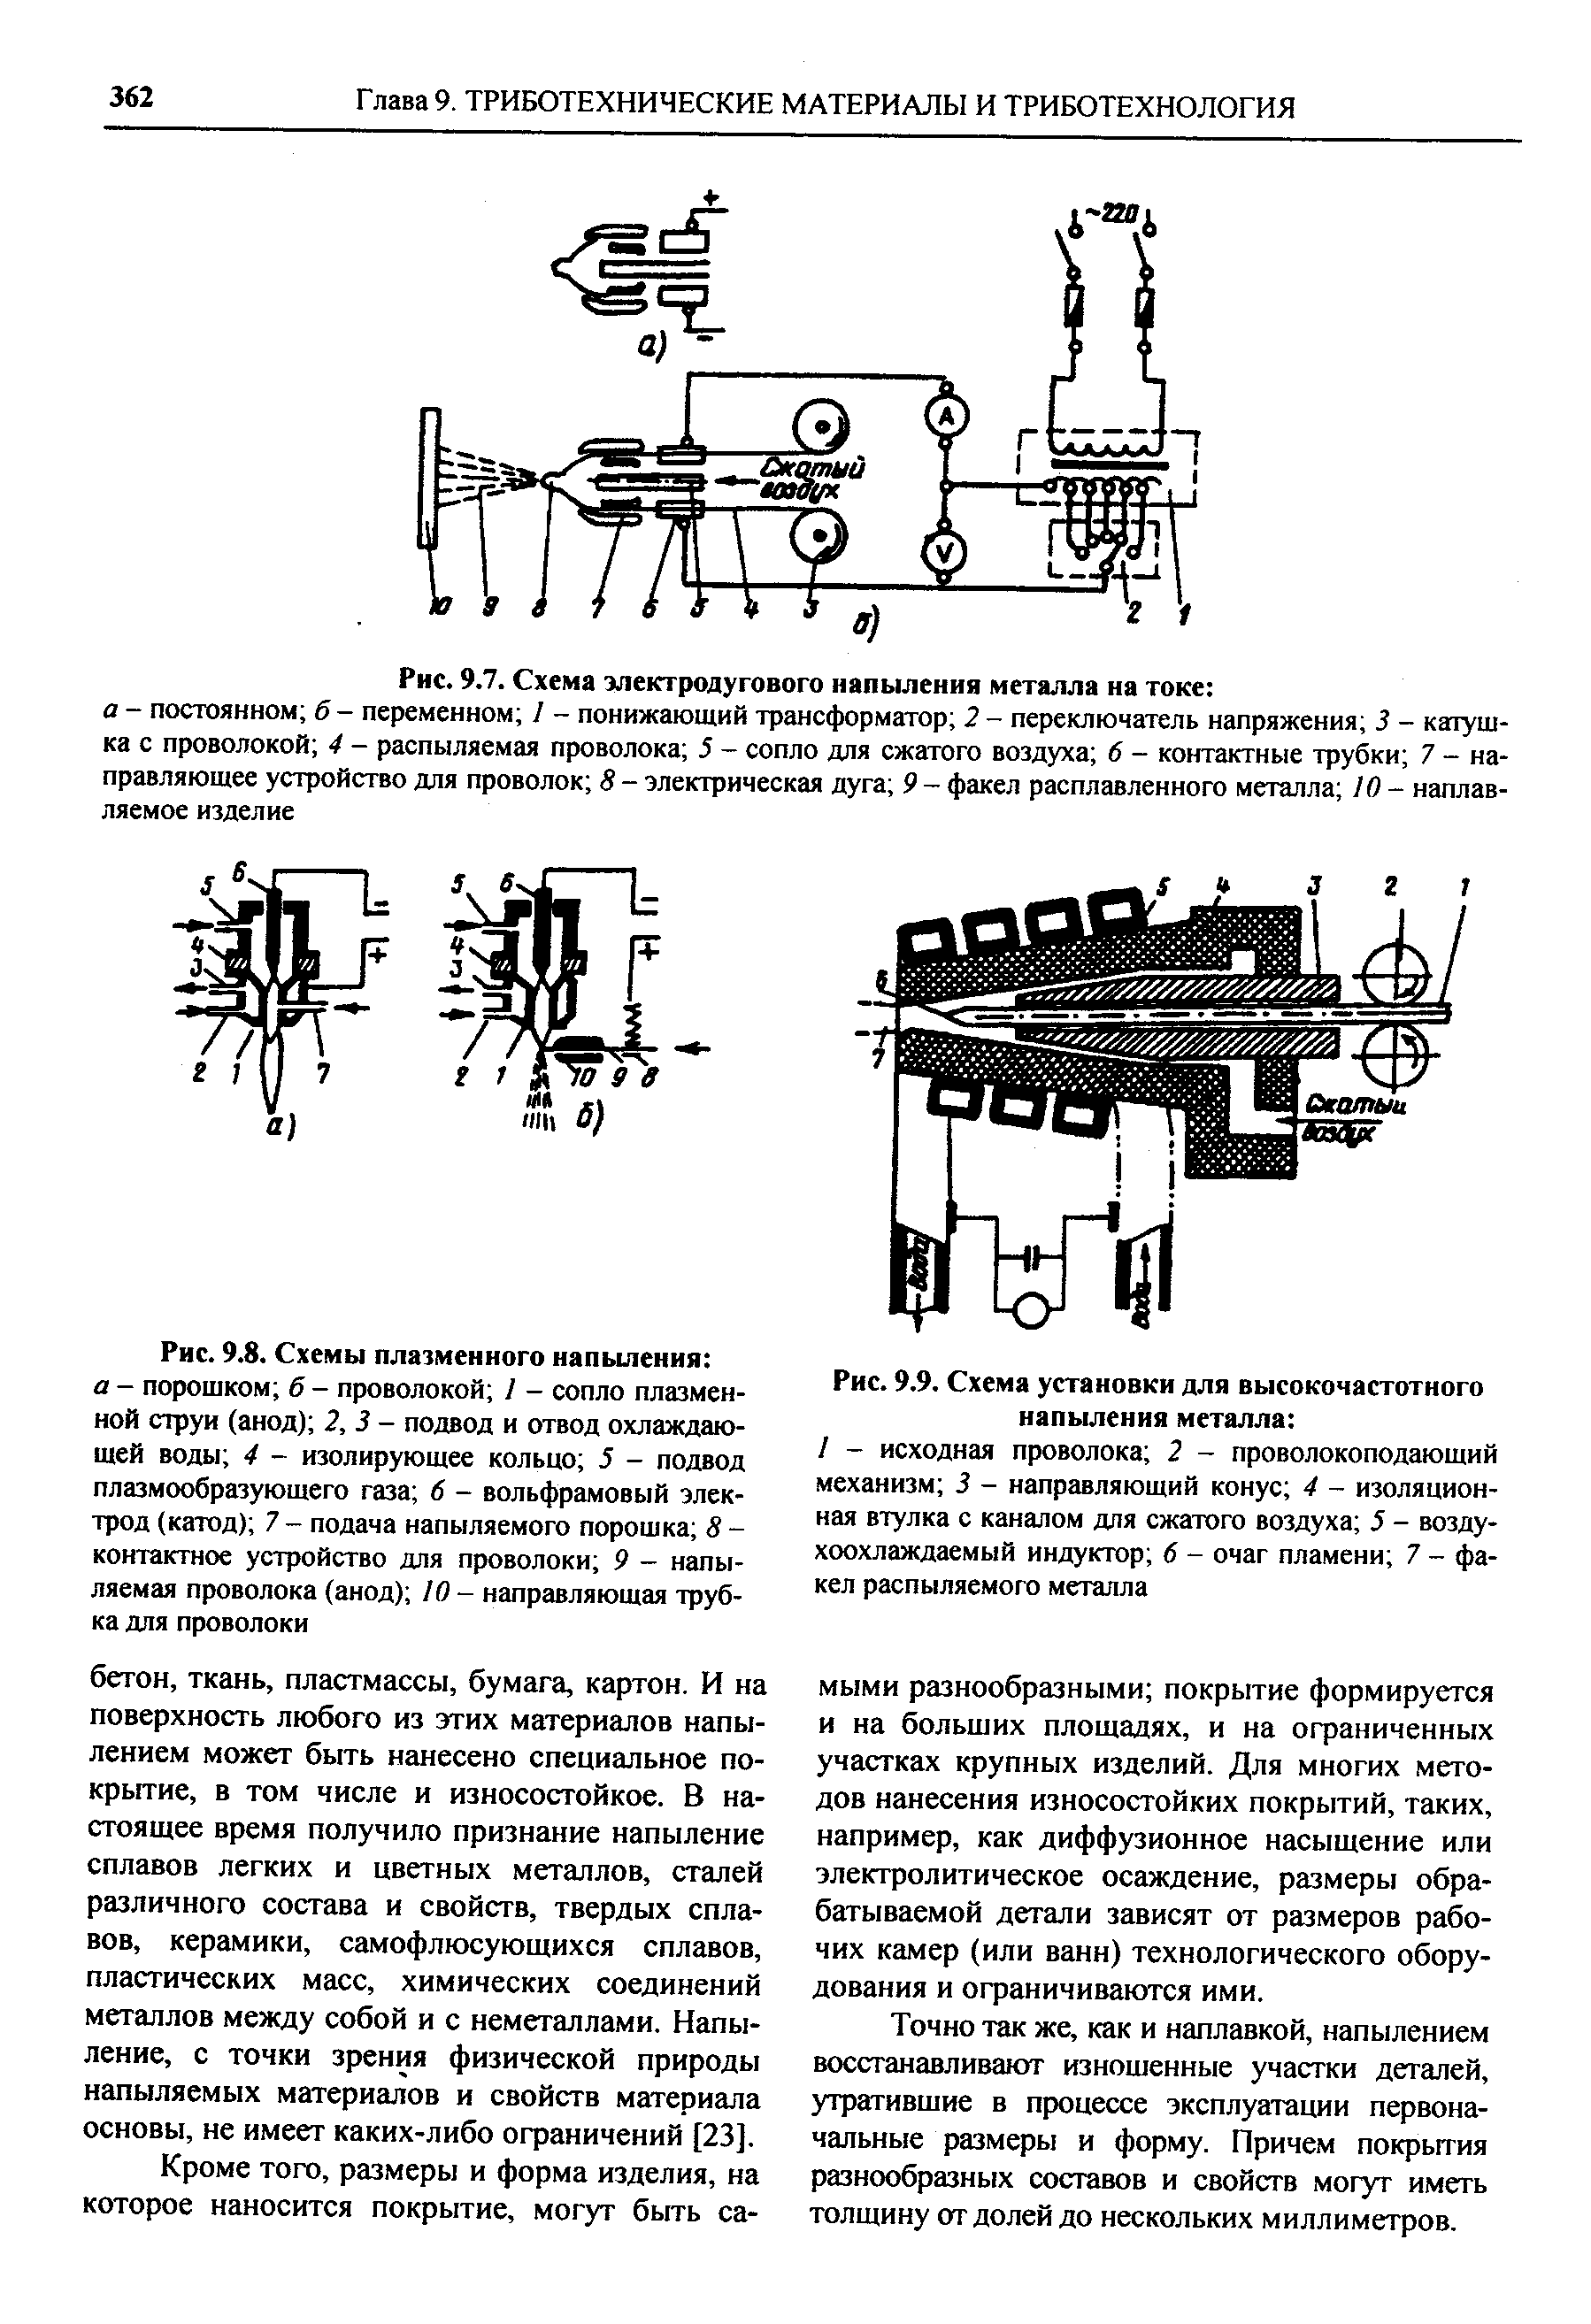 Рис. 9.9. Схема установки для высокочастотного напыления металла 
